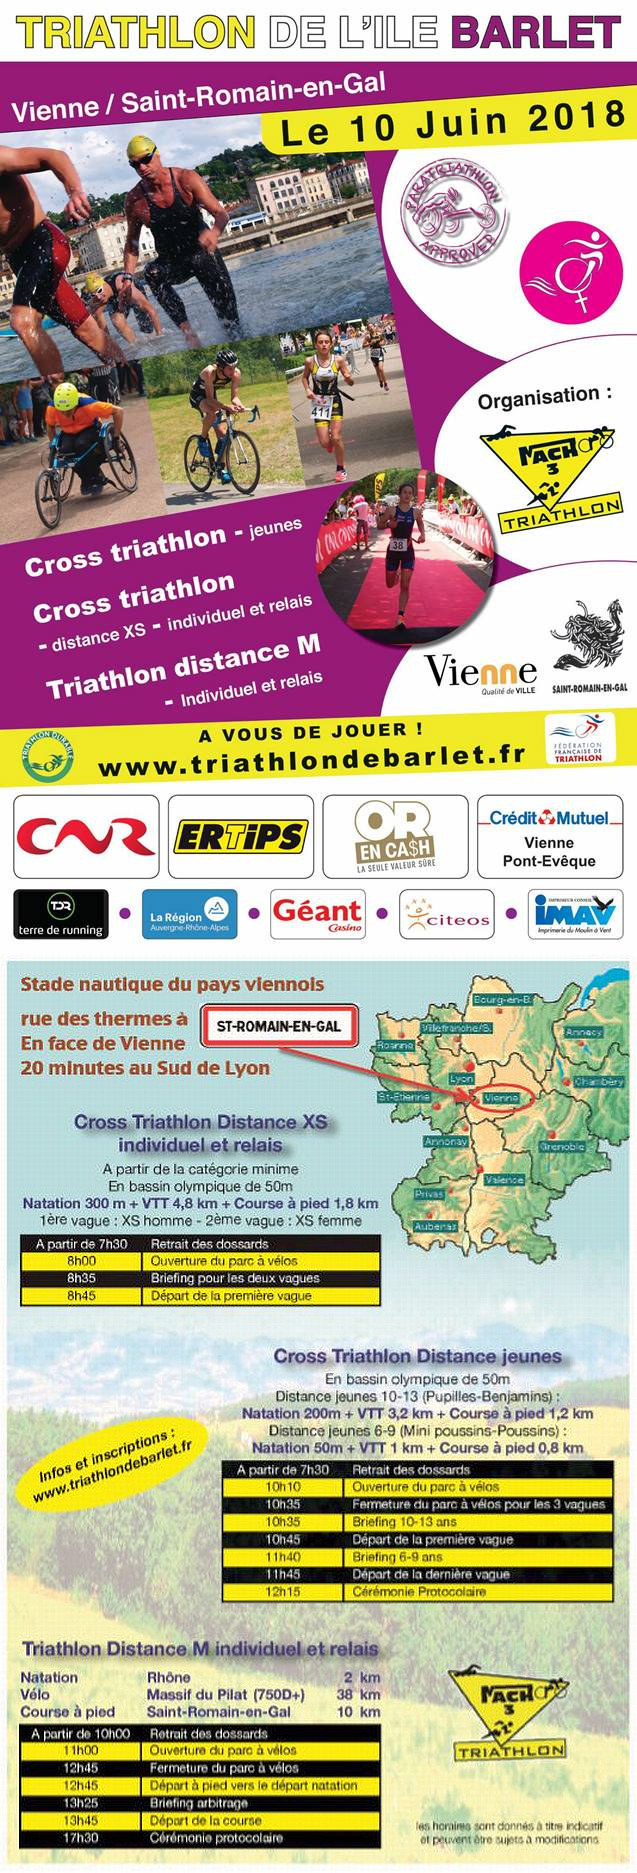 barlet-triathlon-2018-flyer.jpg